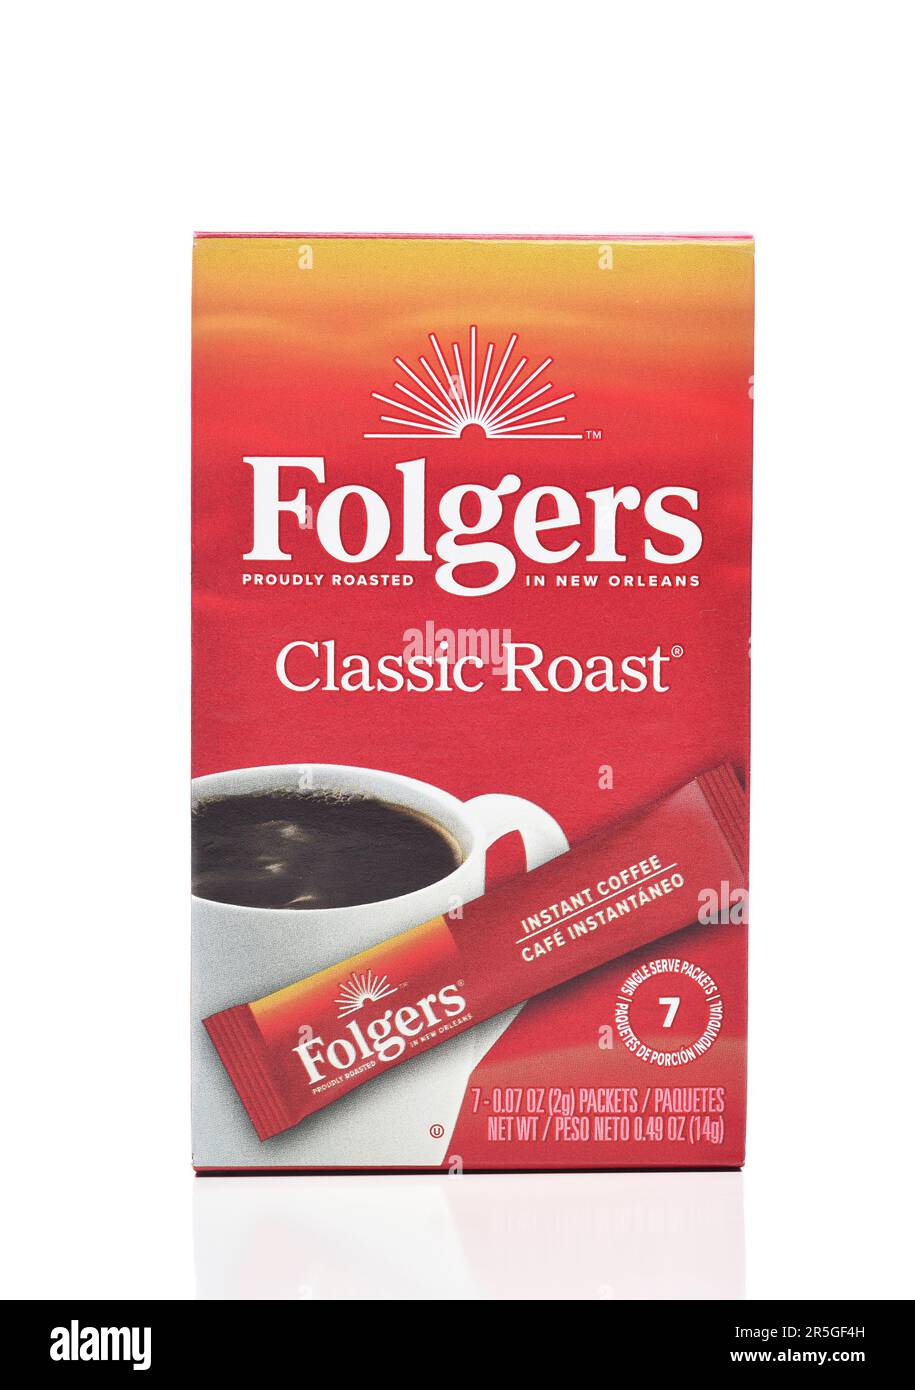 IRIVNE, CALIFORNIA - 01 Giugno 20223: Una scatola di Folgers Coffee Classic Roast pacchetti individuali. Foto Stock